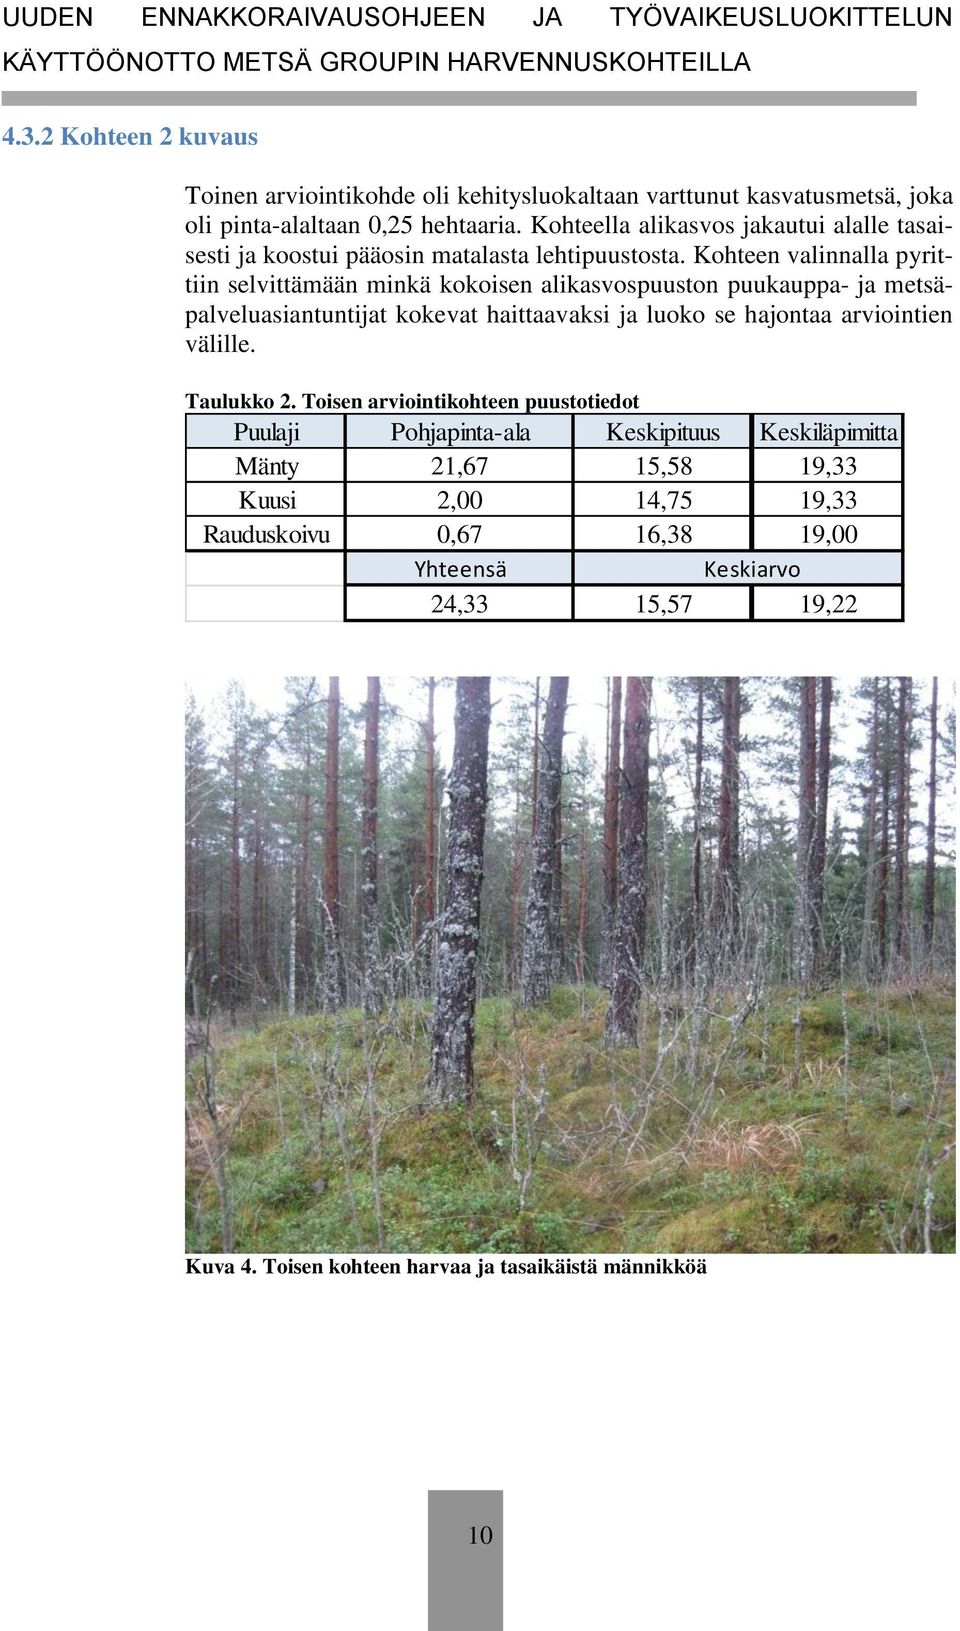 Kohteen valinnalla pyrittiin selvittämään minkä kokoisen alikasvospuuston puukauppa- ja metsäpalveluasiantuntijat kokevat haittaavaksi ja luoko se hajontaa arviointien